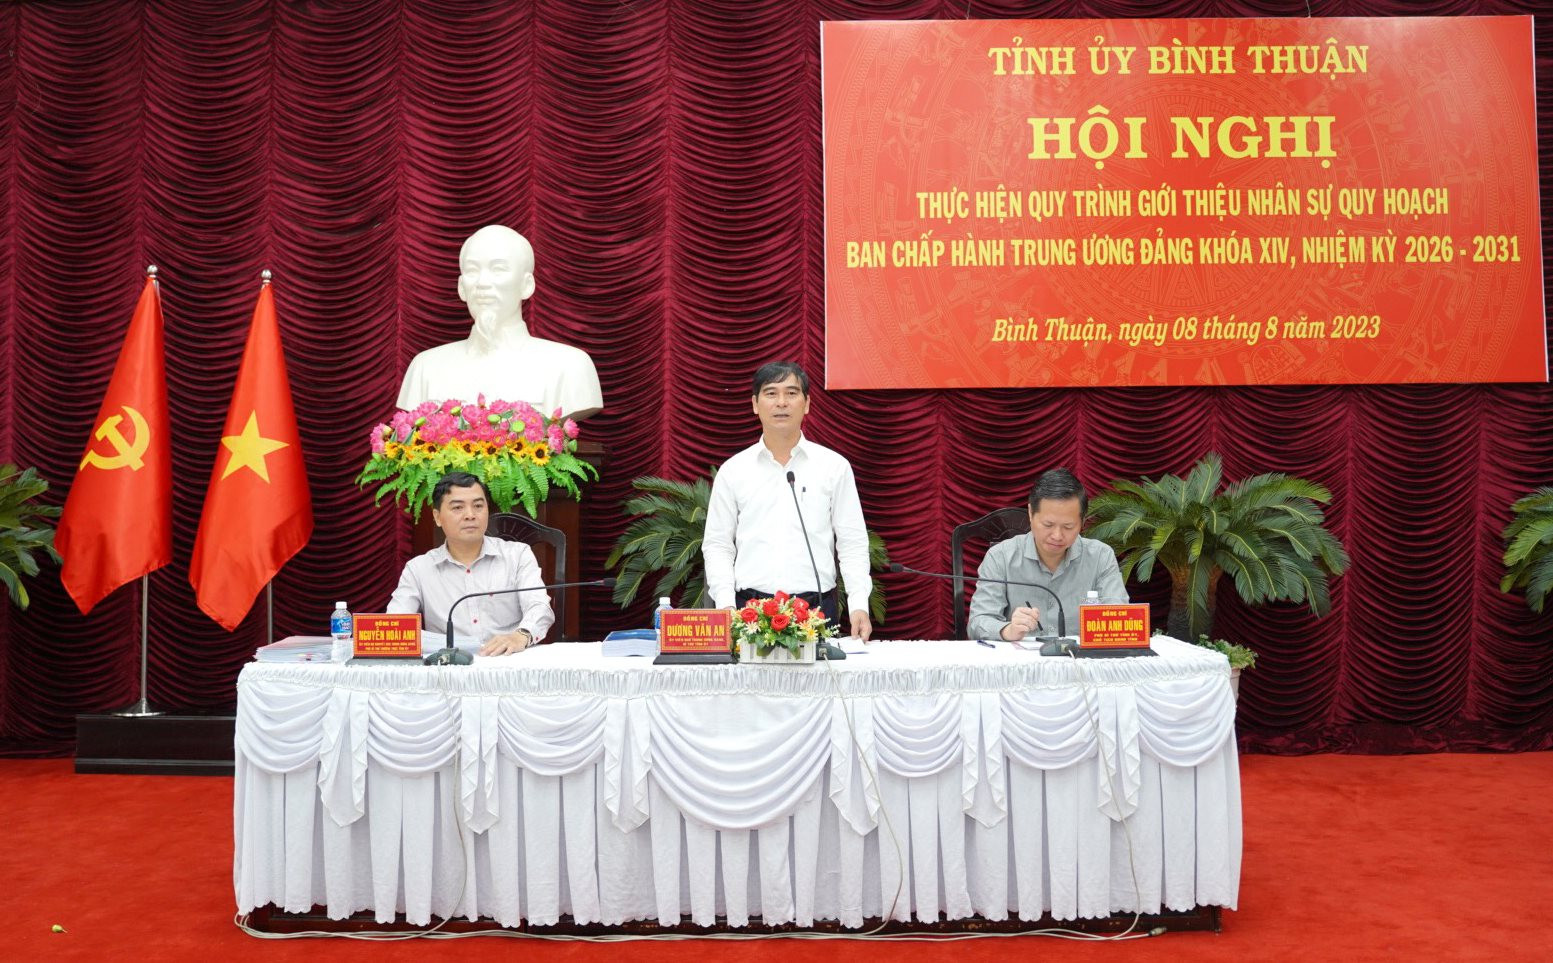 Bình Thuận giới thiệu nhân sự quy hoạch Ủy viên BCH Trung ương, khóa XIV - Ảnh 1.